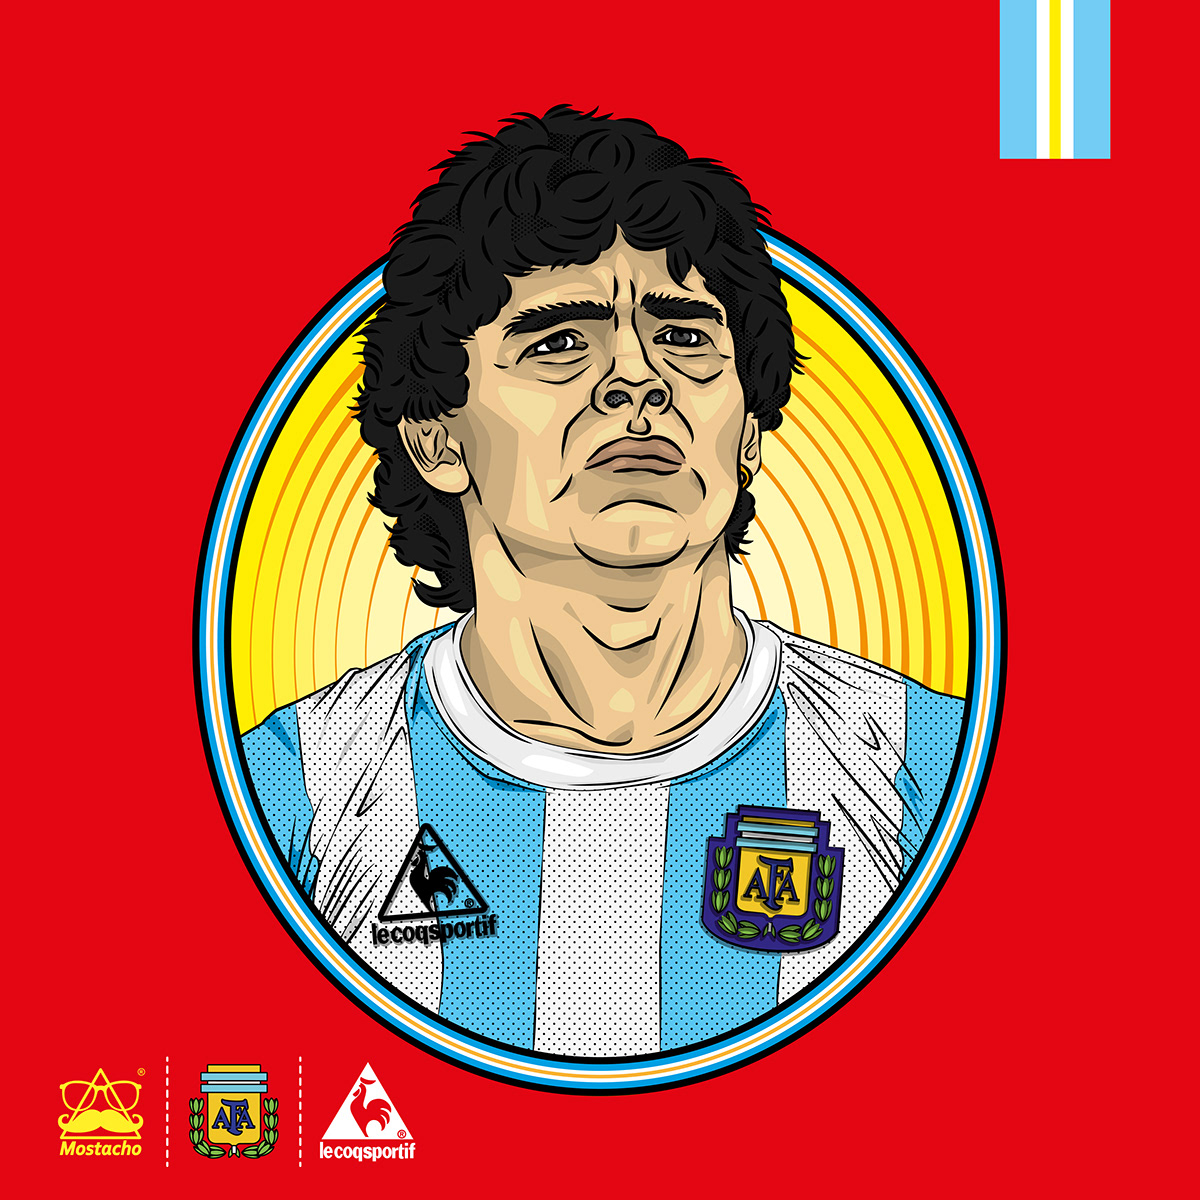 maradona Diego Maradona EL PELUSA COPA MUNDO 86 mundial 86  ilustracion Le Coq Sportif argentina